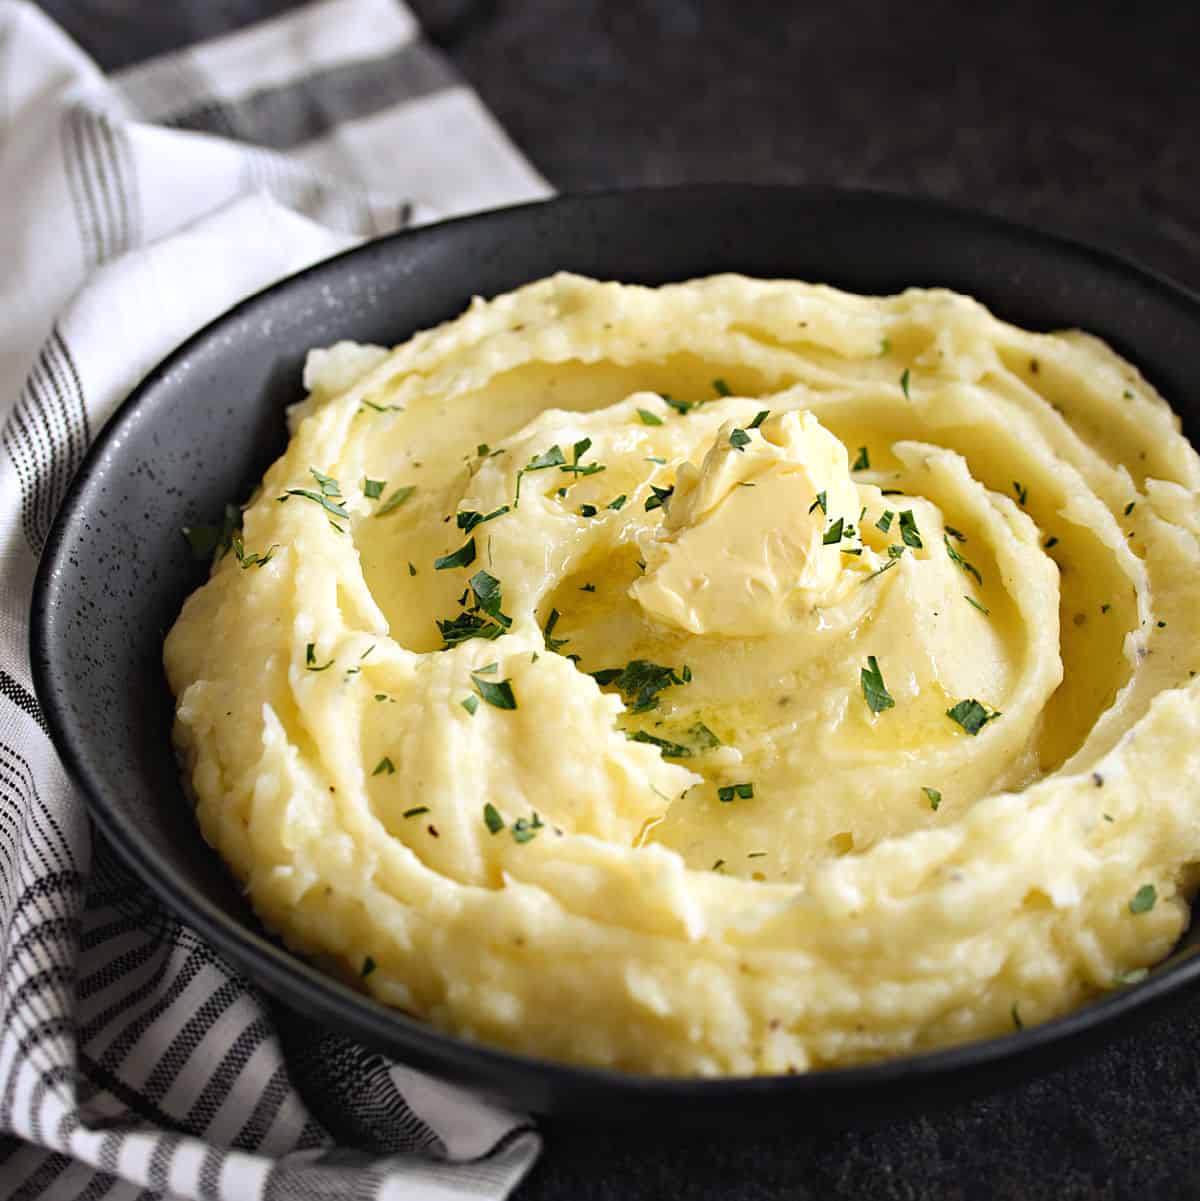 How to Make Homemade Mashed Potatoes